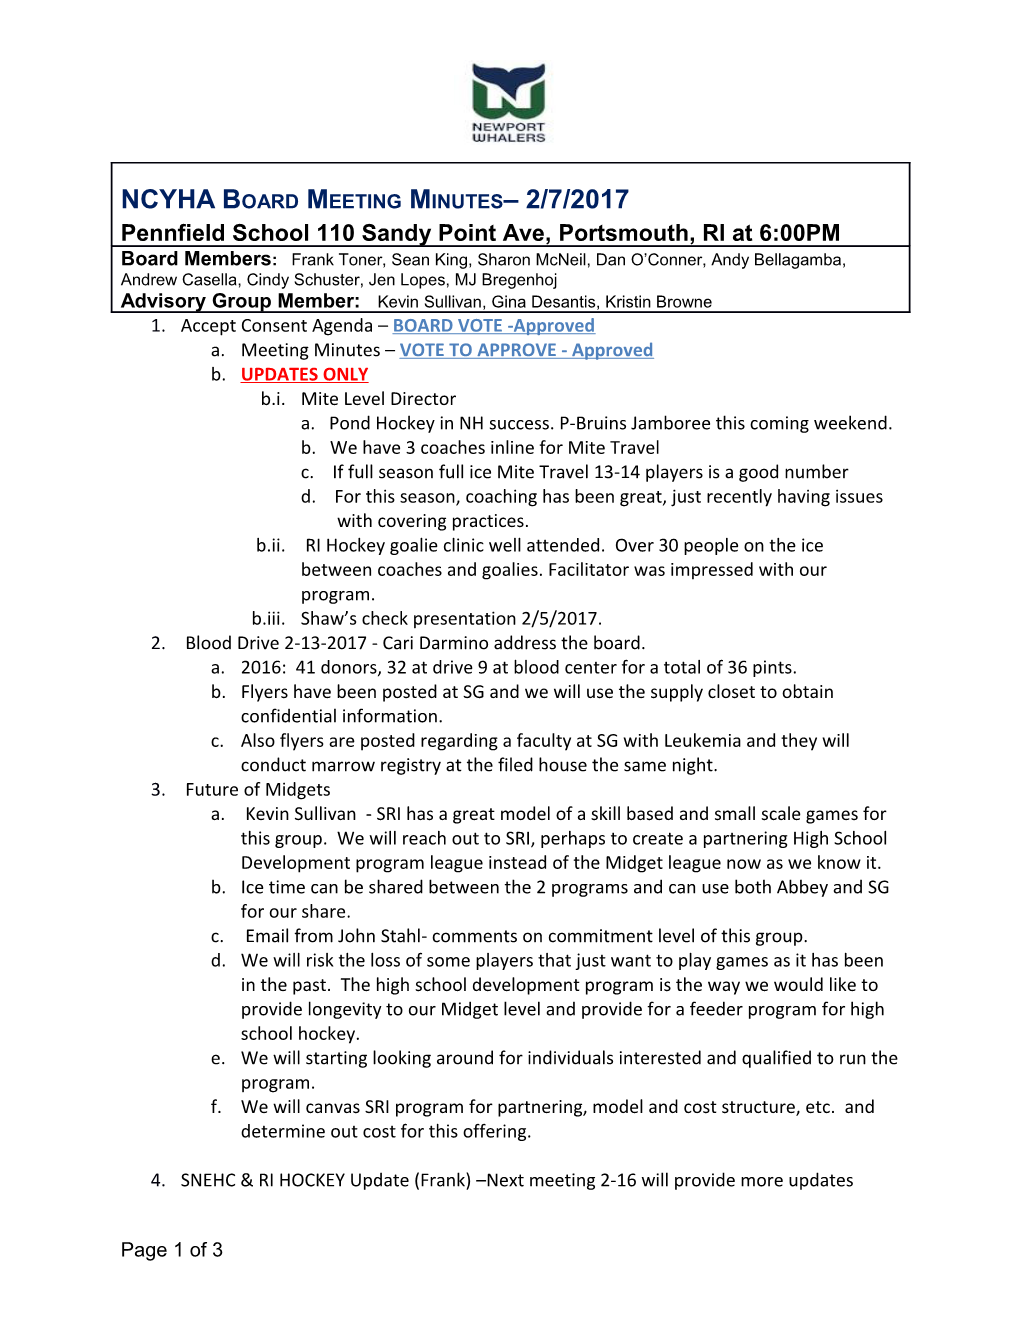 NCYHA Board Meeting Minutes 2/7/2017